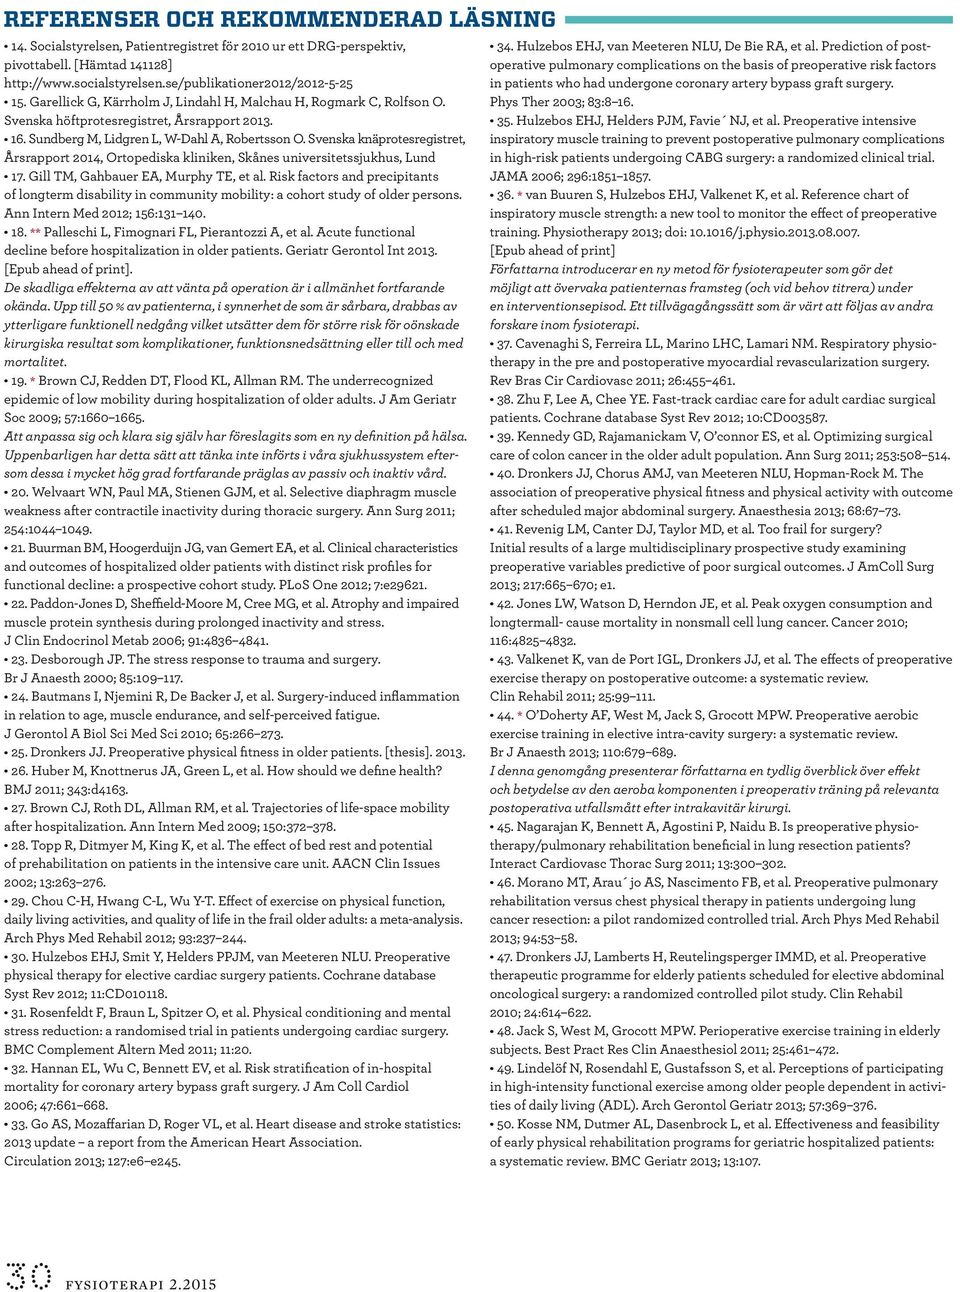 Svenska knäprotesregistret, Årsrapport 2014, Ortopediska kliniken, Skånes universitetssjukhus, Lund 17. Gill TM, Gahbauer EA, Murphy TE, et al.